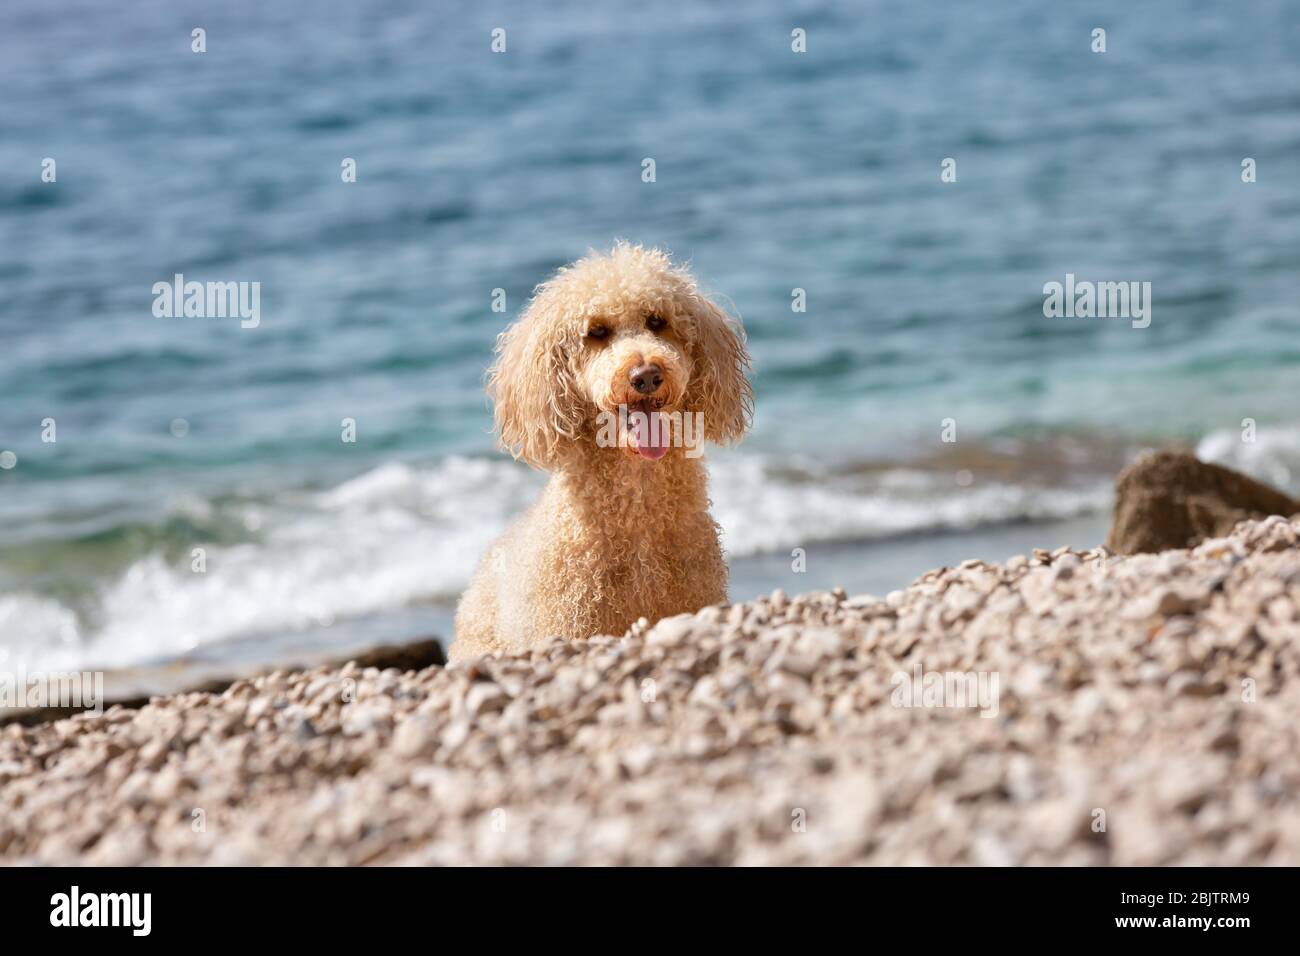 Porträt eines jungen Pudelhundes am sonnigen Strand. Ein glücklicher Hund, der an einem sonnigen Sommertag am Strand spielt, Bol, Insel Brac, Kroatien Stockfoto